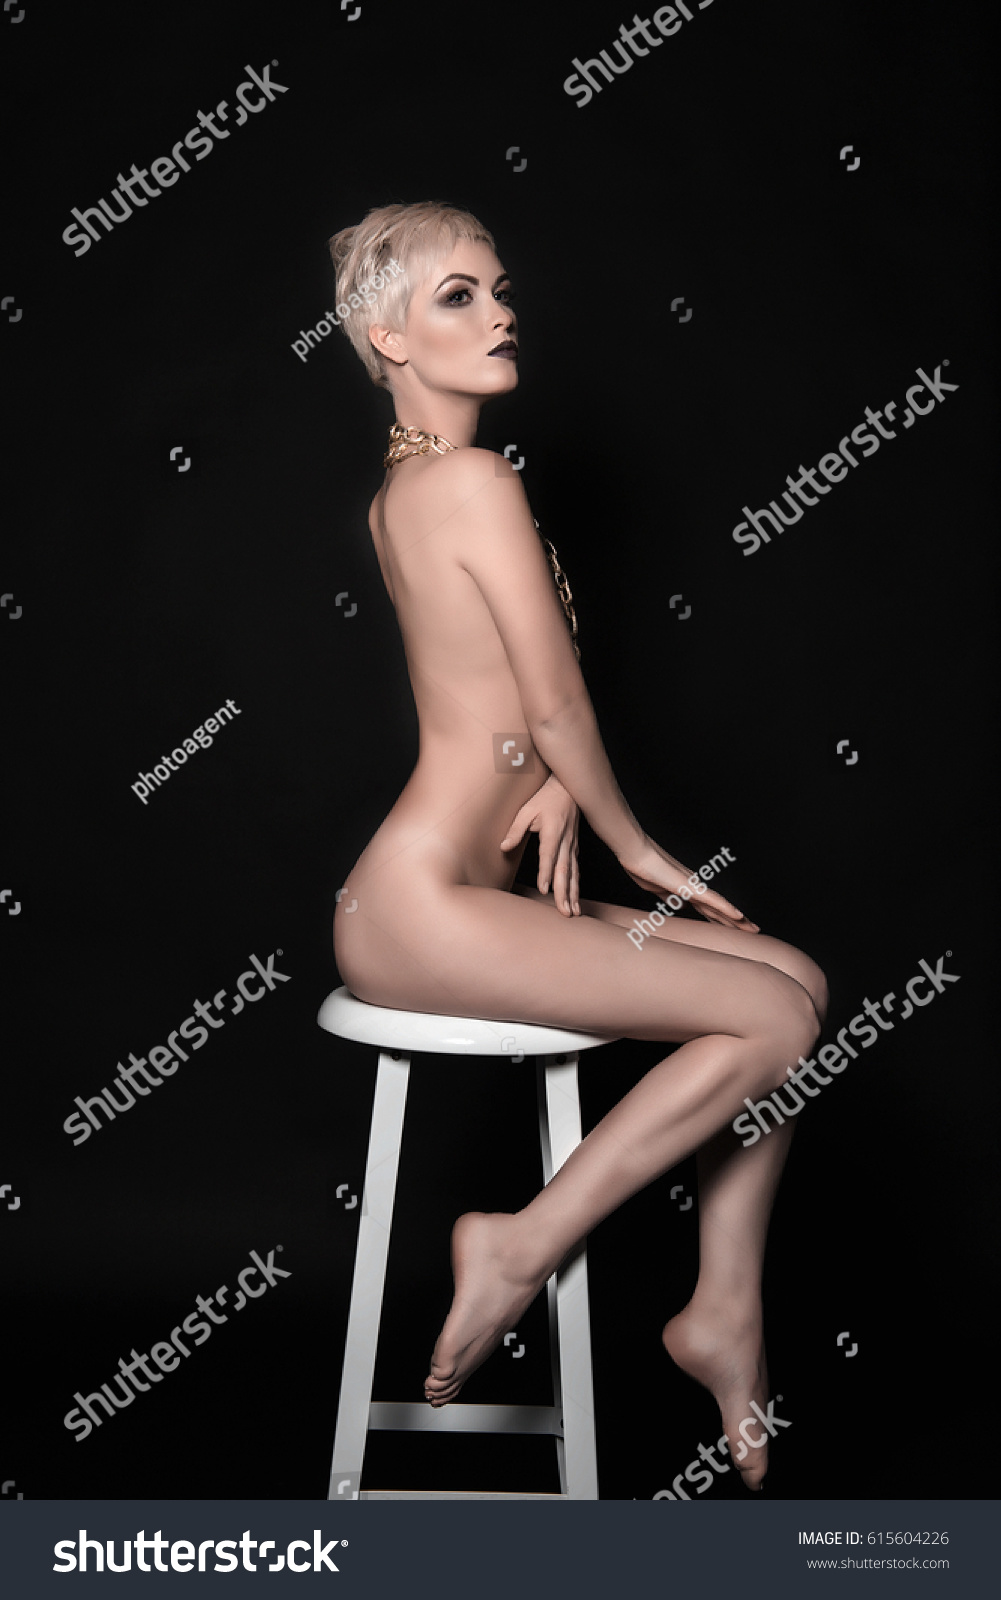 girl long legs naked video gallerie photo